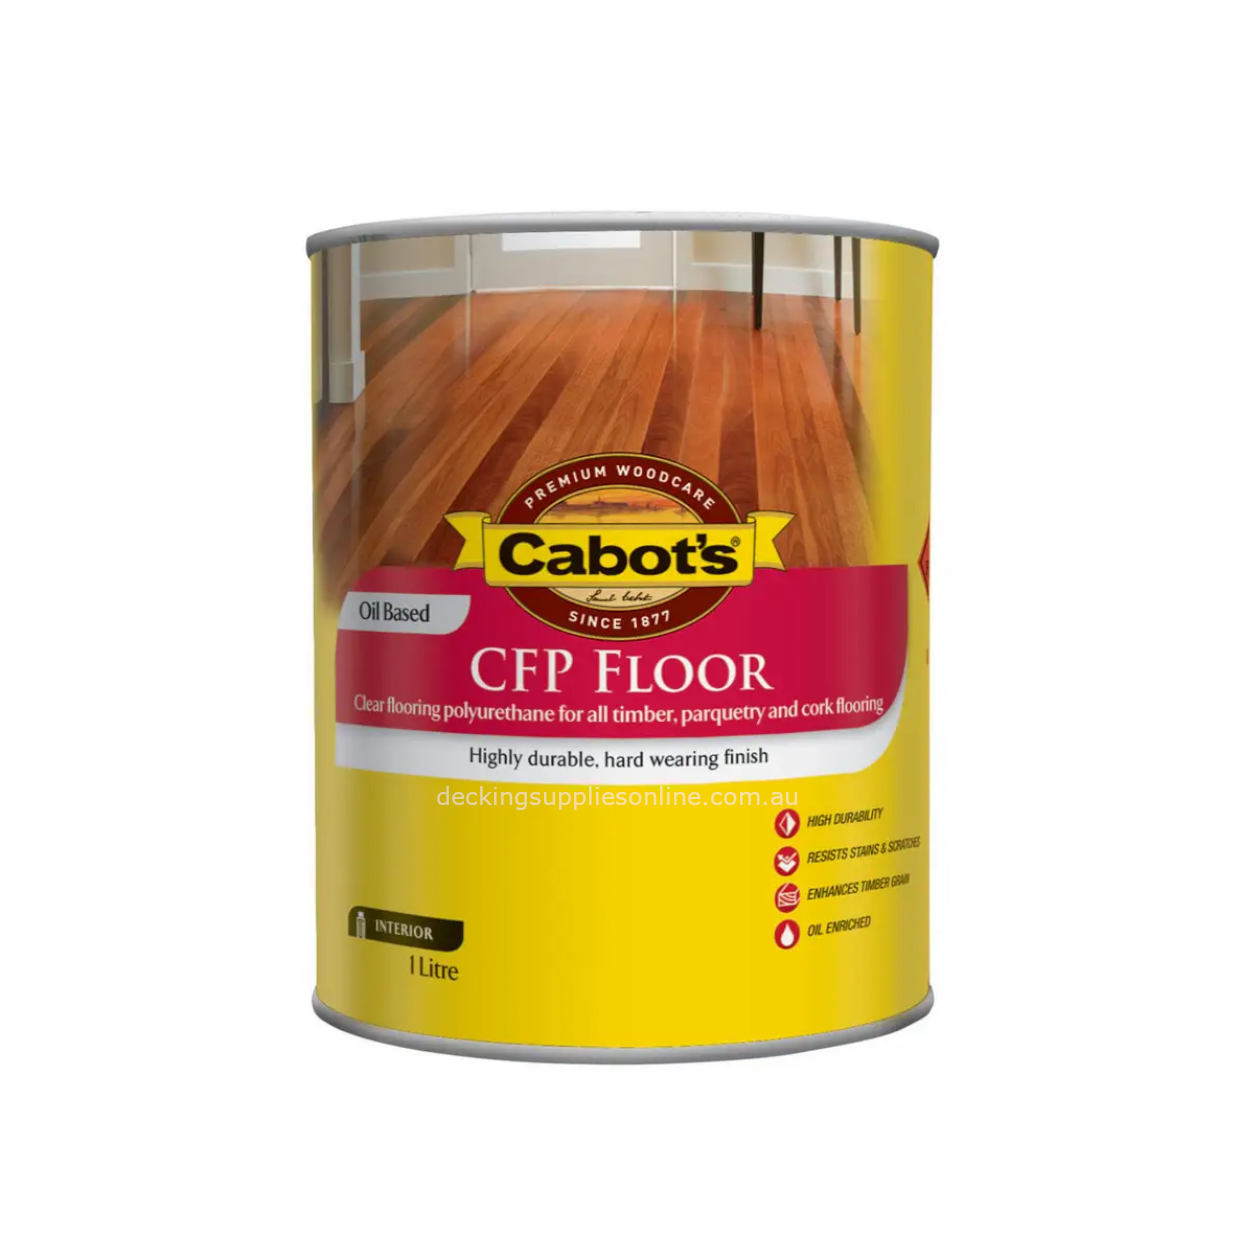 CABOT'S - CFP Floor Oil Based